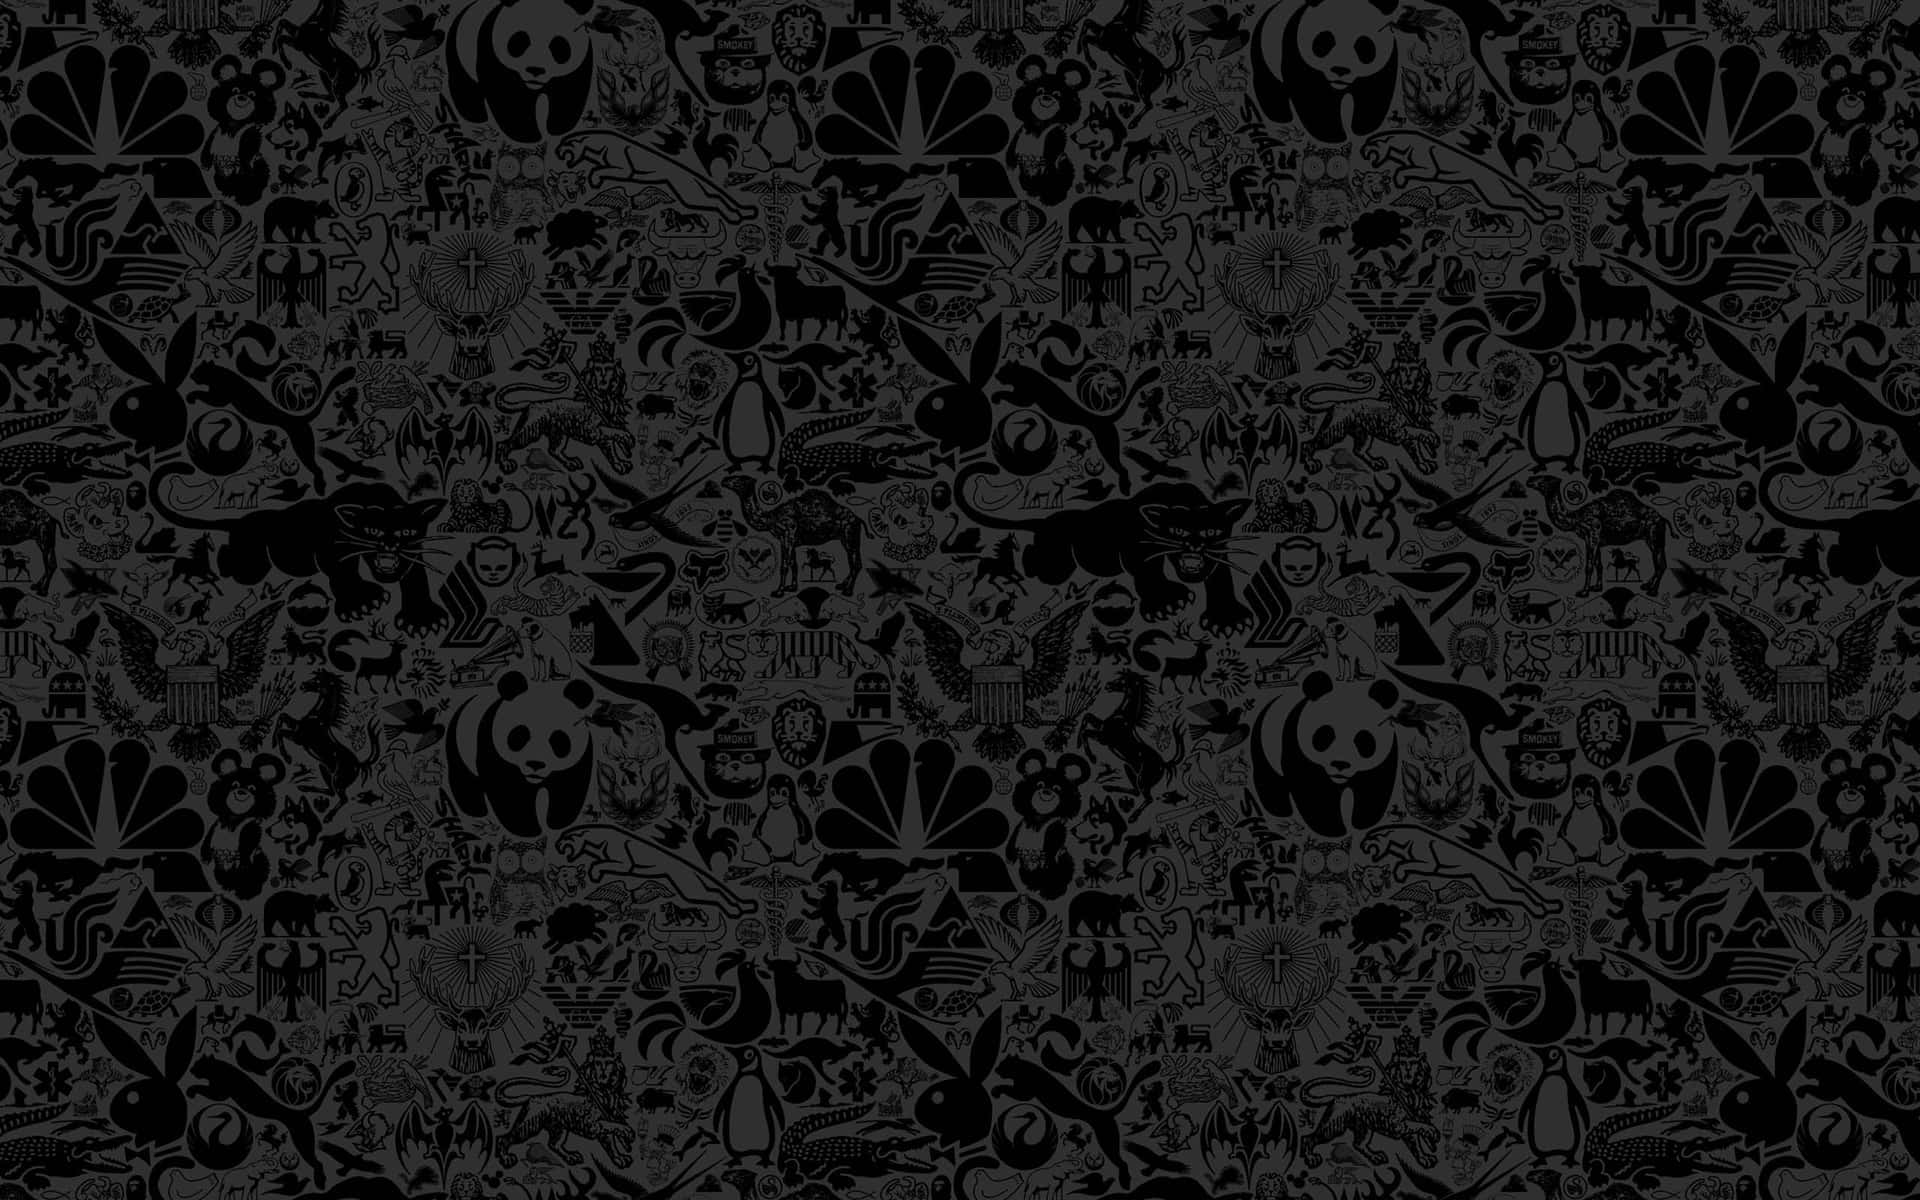 Patronesde Textura Negra De Logotipos De Marcas De Animales En Fondos De Pantalla Para Computadoras O Dispositivos Móviles.